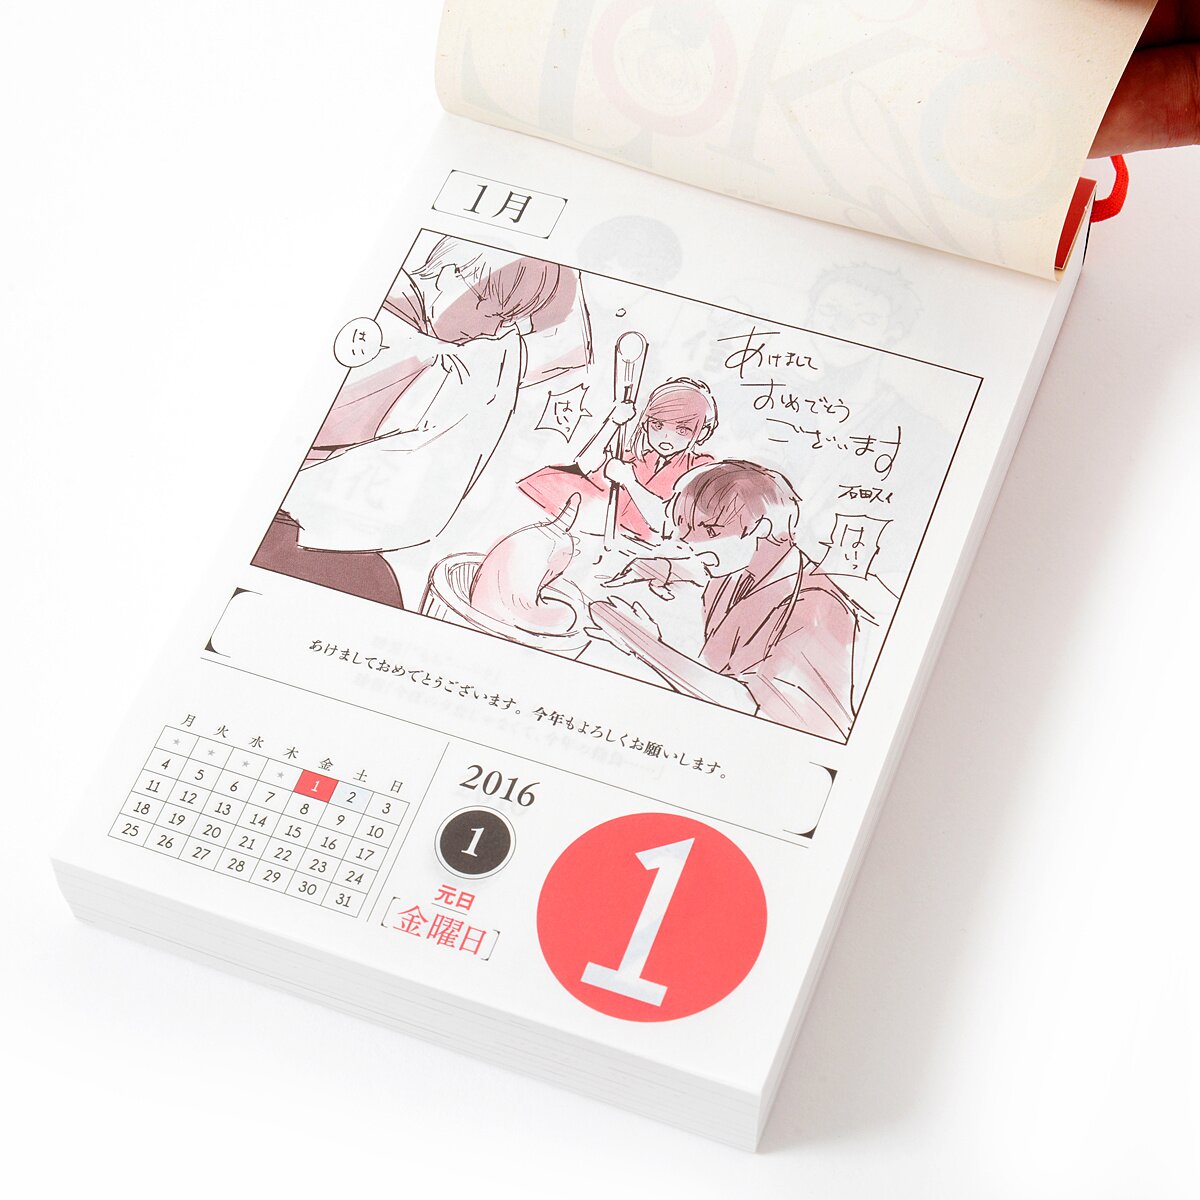 Aldnoah.Zero 2016 Calendar - Tokyo Otaku Mode (TOM)